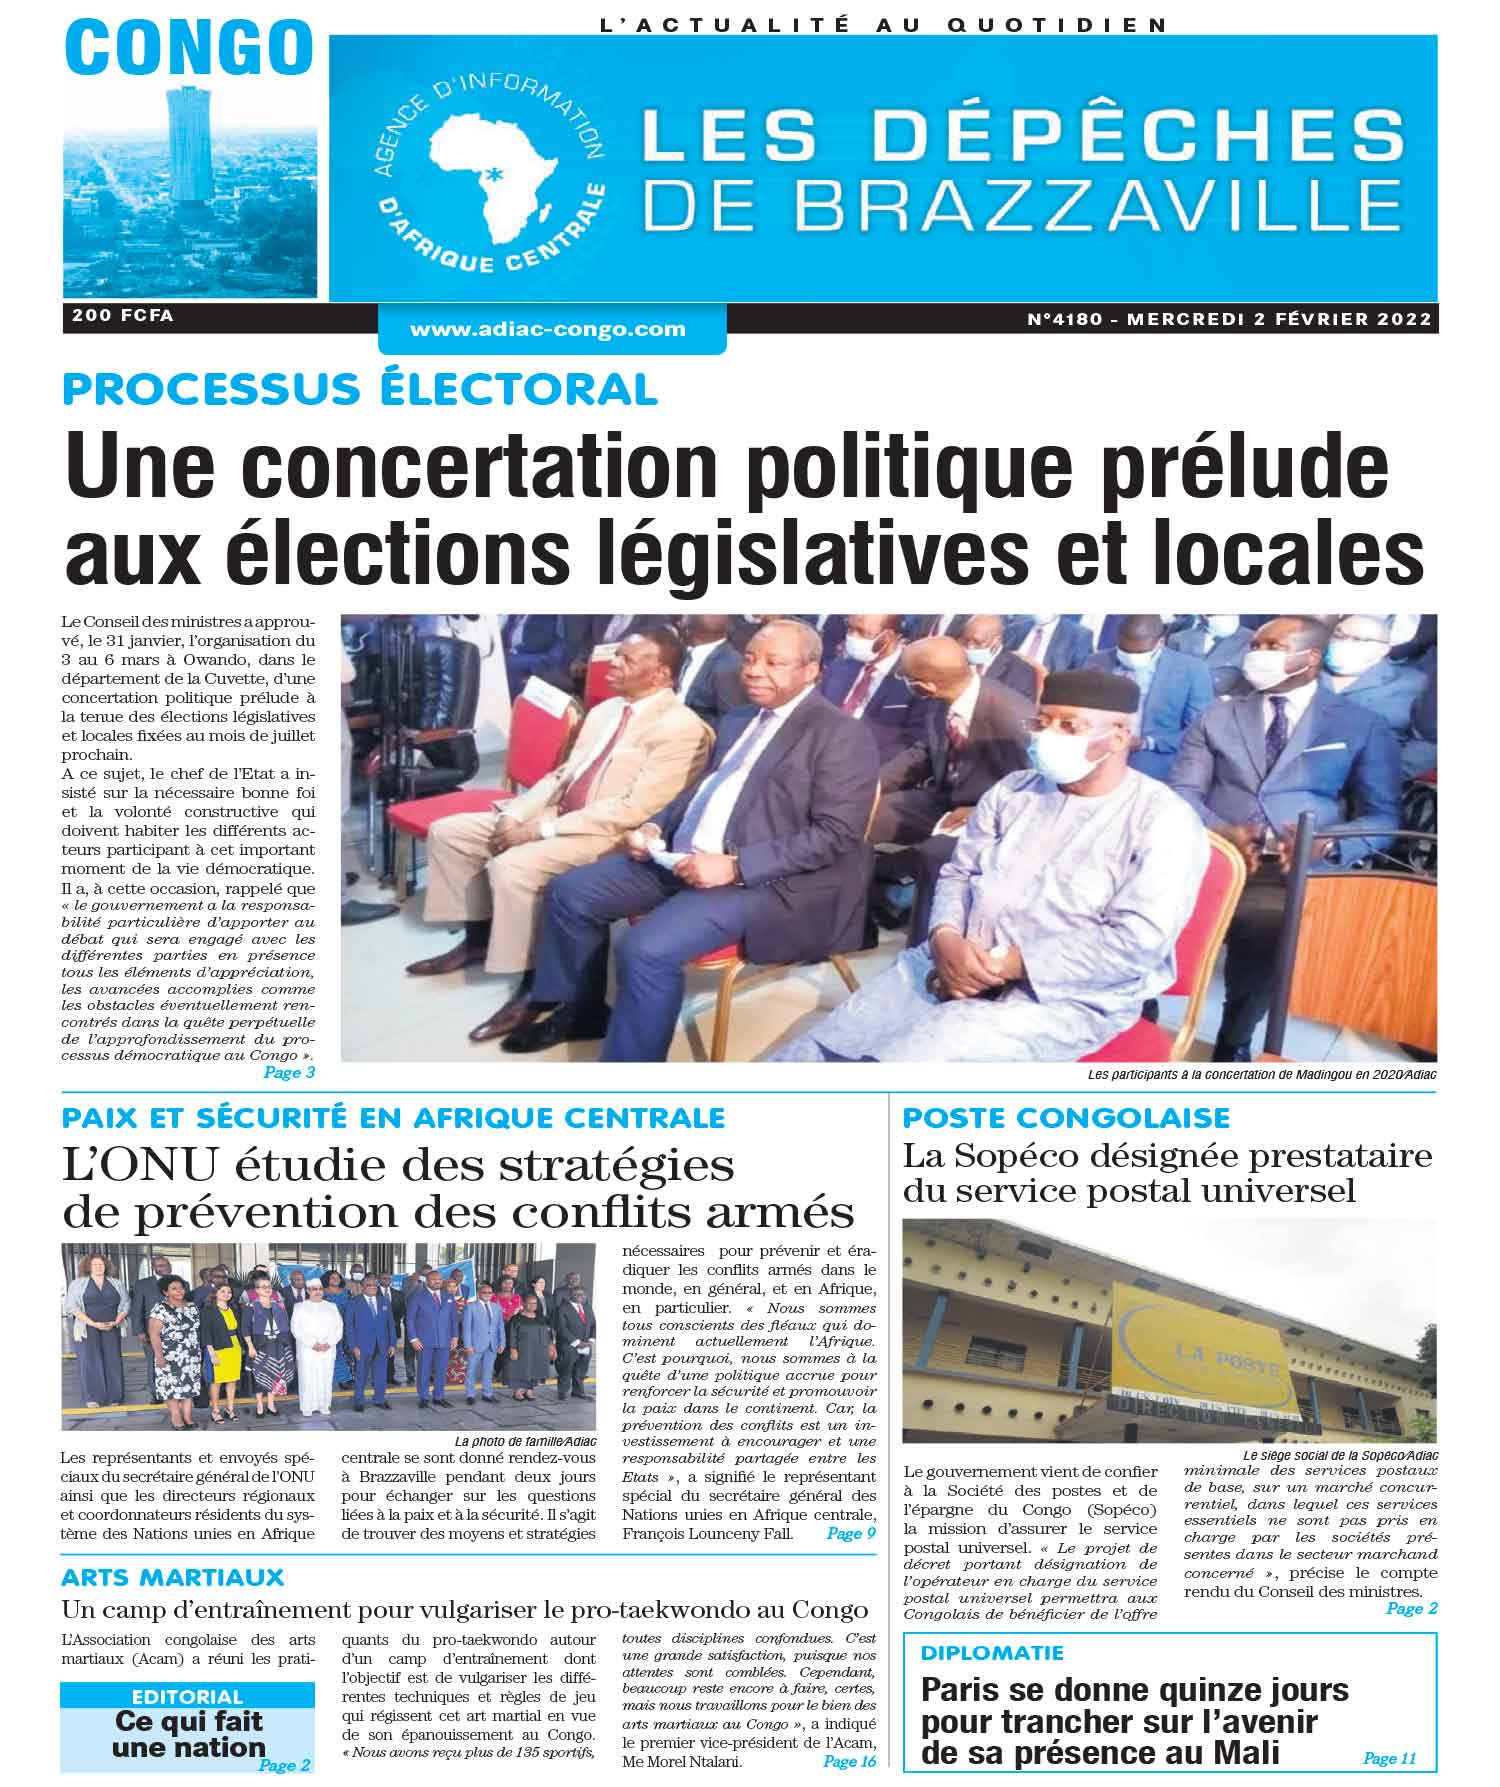 Cover Les Dépêches de Brazzaville - 4180 